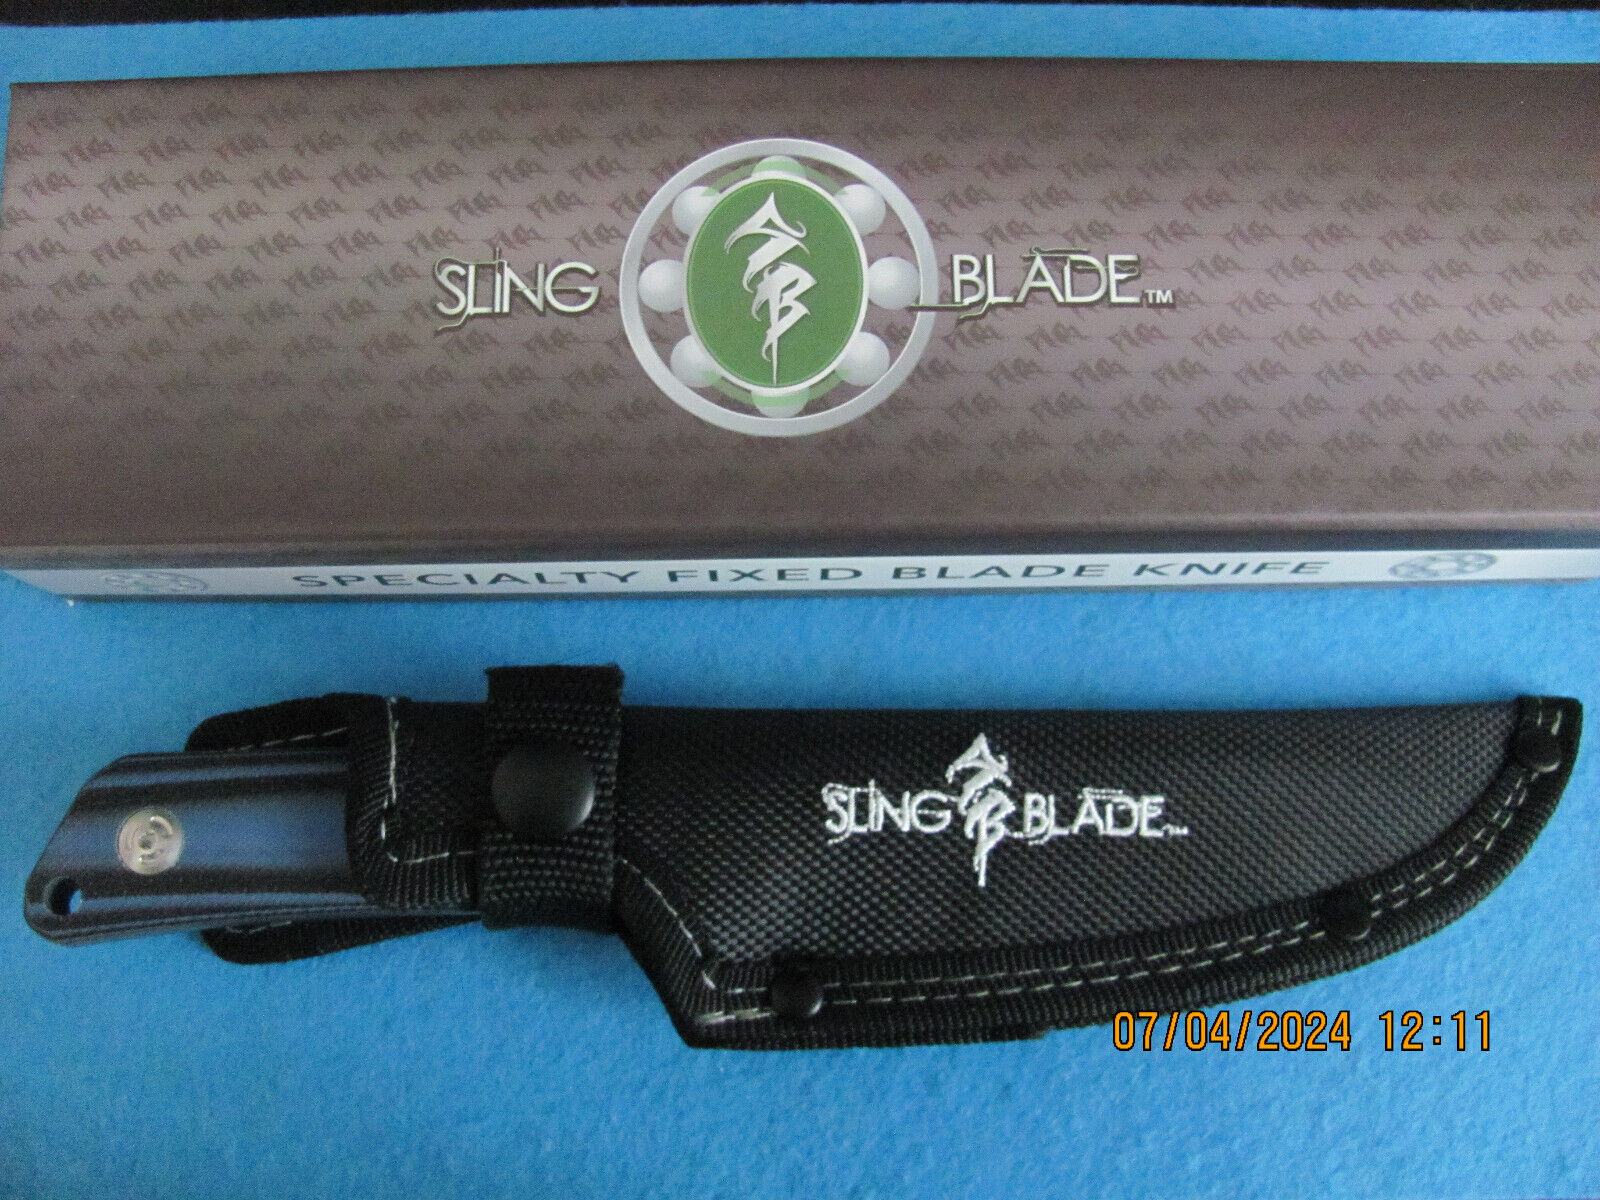 Sling Blade SBL-31BL/G10 9 inch Skinner Knife Blue/Black G10 Handle w Sheath